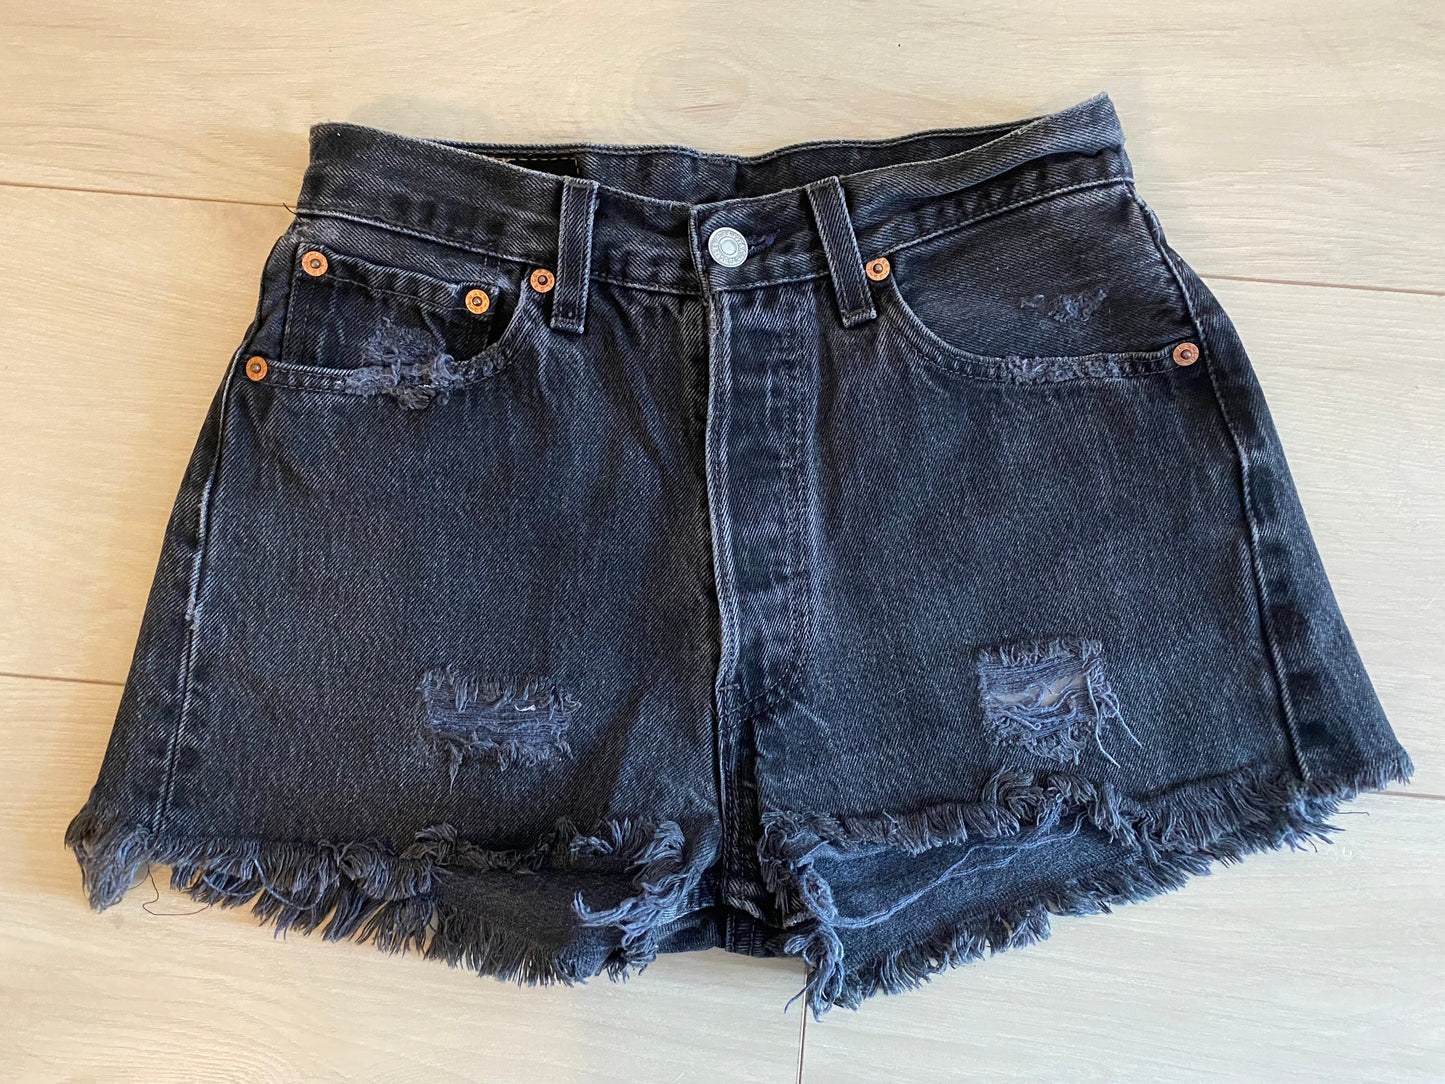 Size 25/26 Levi’s 501 black jean shorts